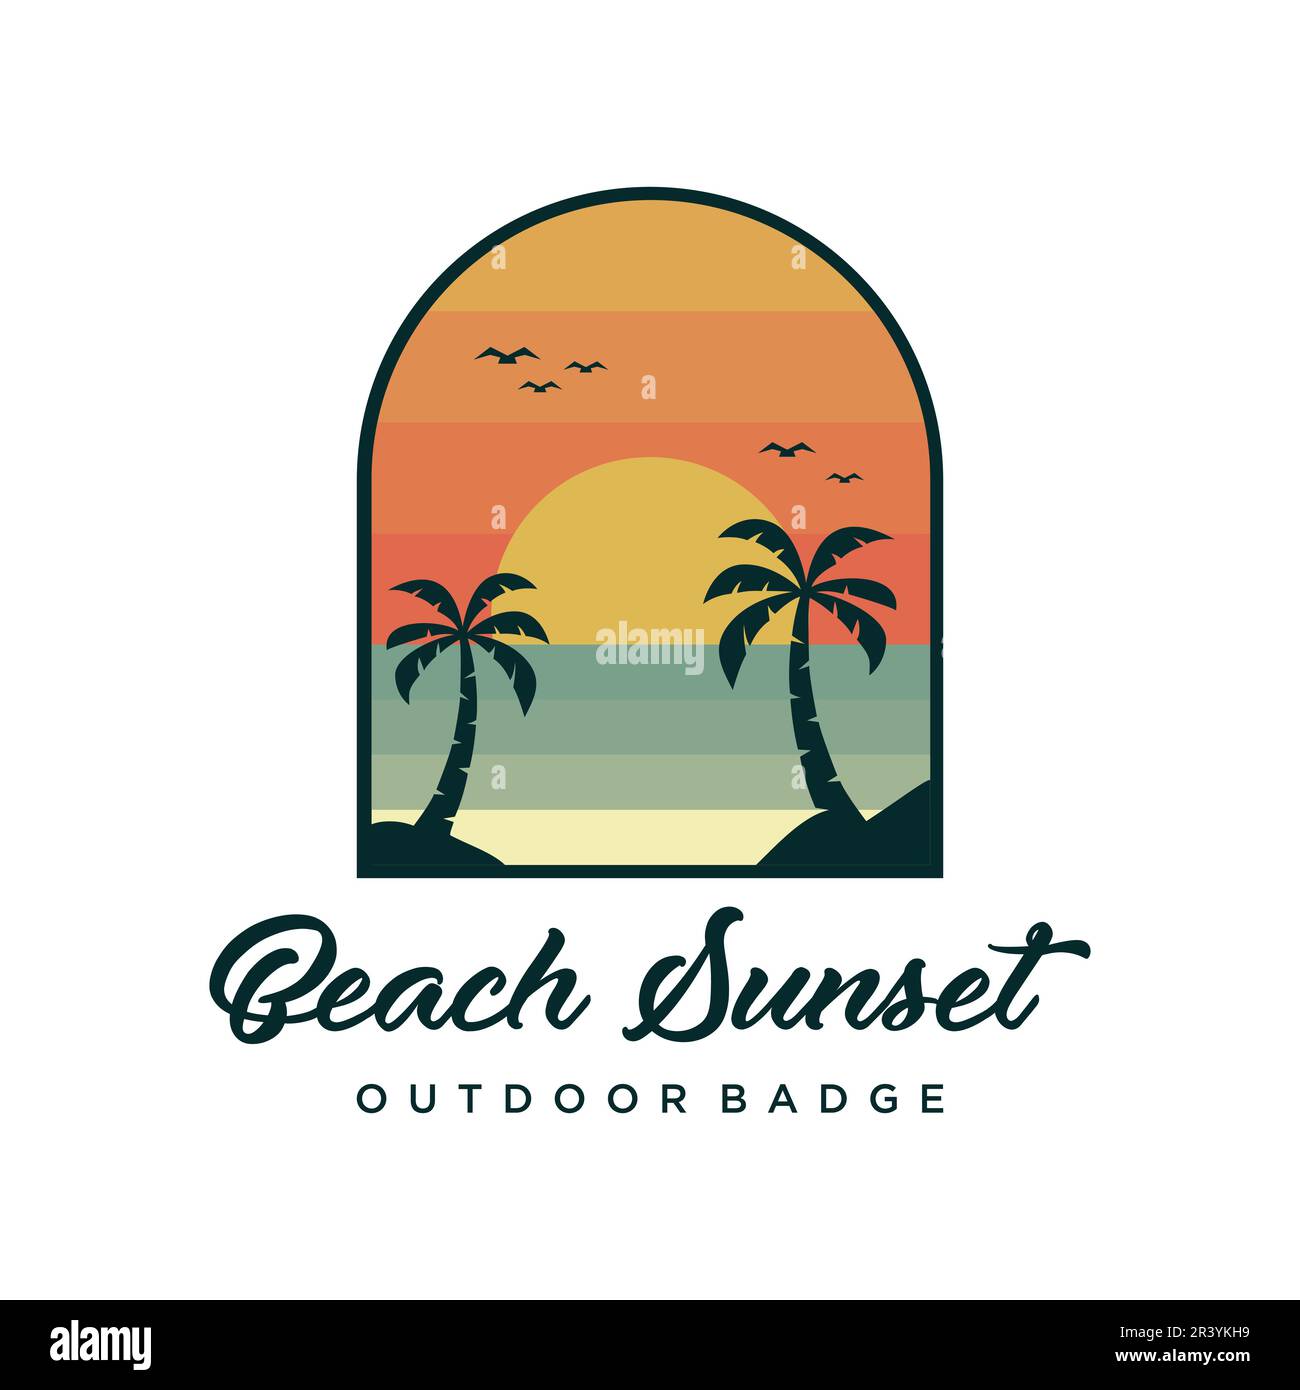 Creative Beach Sunset Outdoor badge logo design vettoriale. Illustrazione dell'oceano in stile retrò Illustrazione Vettoriale